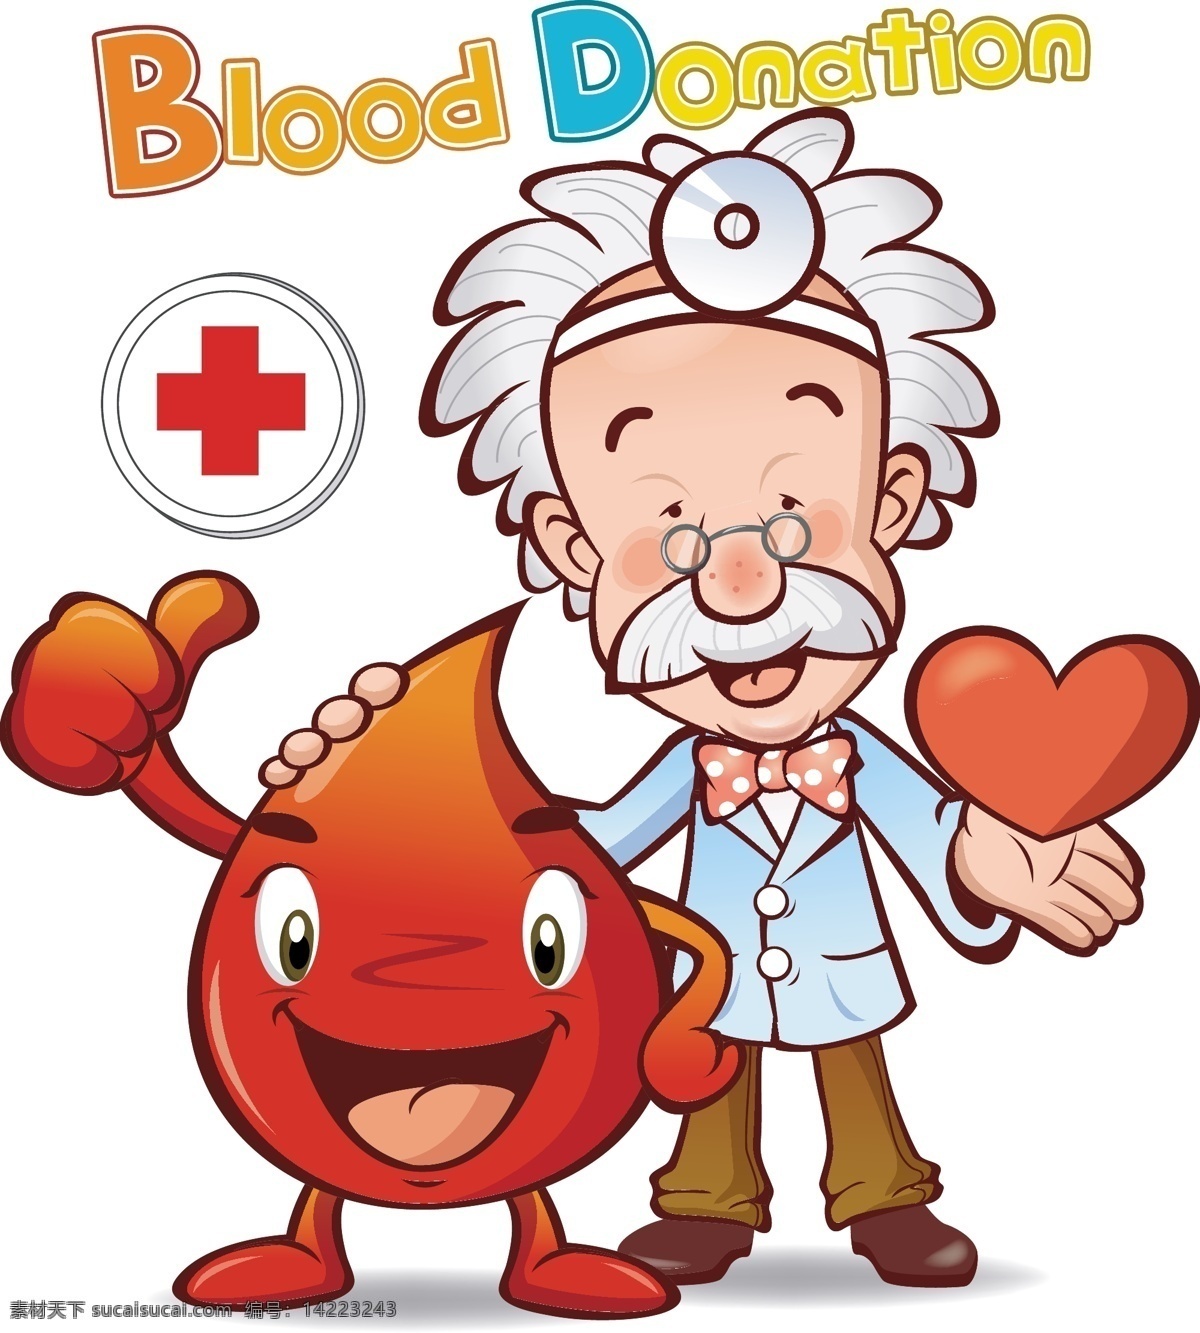 医生 医院 卡通 动漫 插画 爱心 顶呱呱 动漫动画 动漫人物 和谐 医护人员 友善 十字标志 棒棒的 血液 可爱